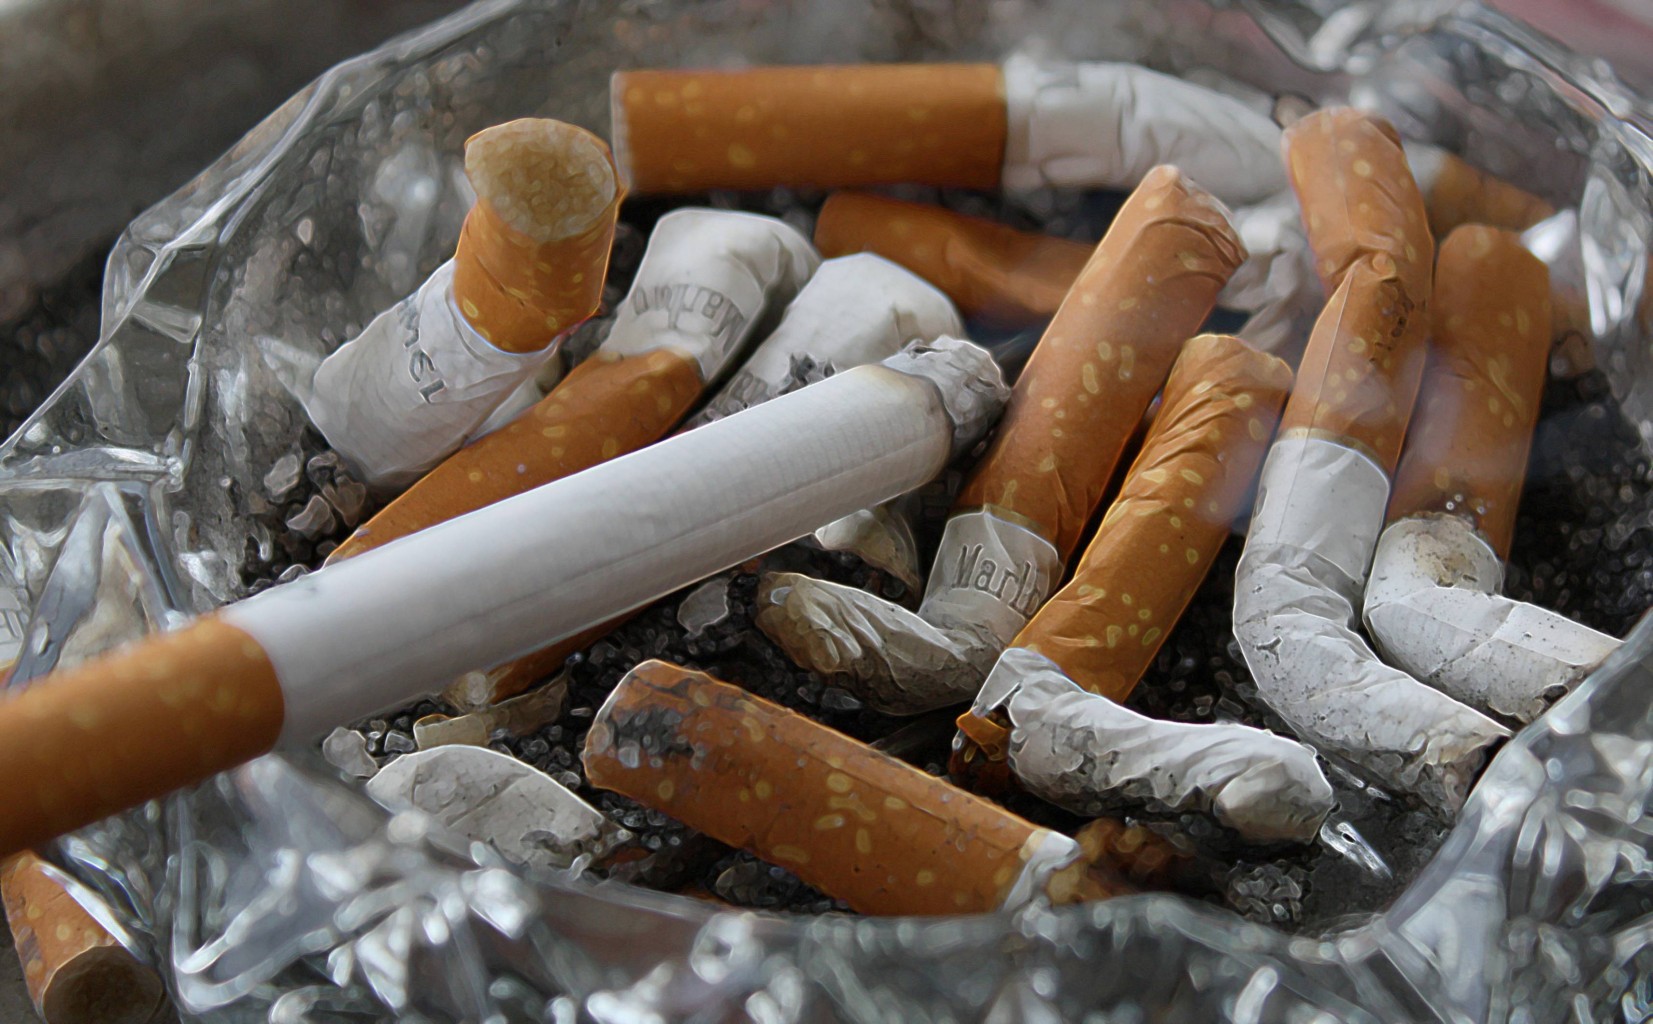 Según una nueva encuesta de la APA, se consideran cigarrillos más adictivos entre opciones encuestadas